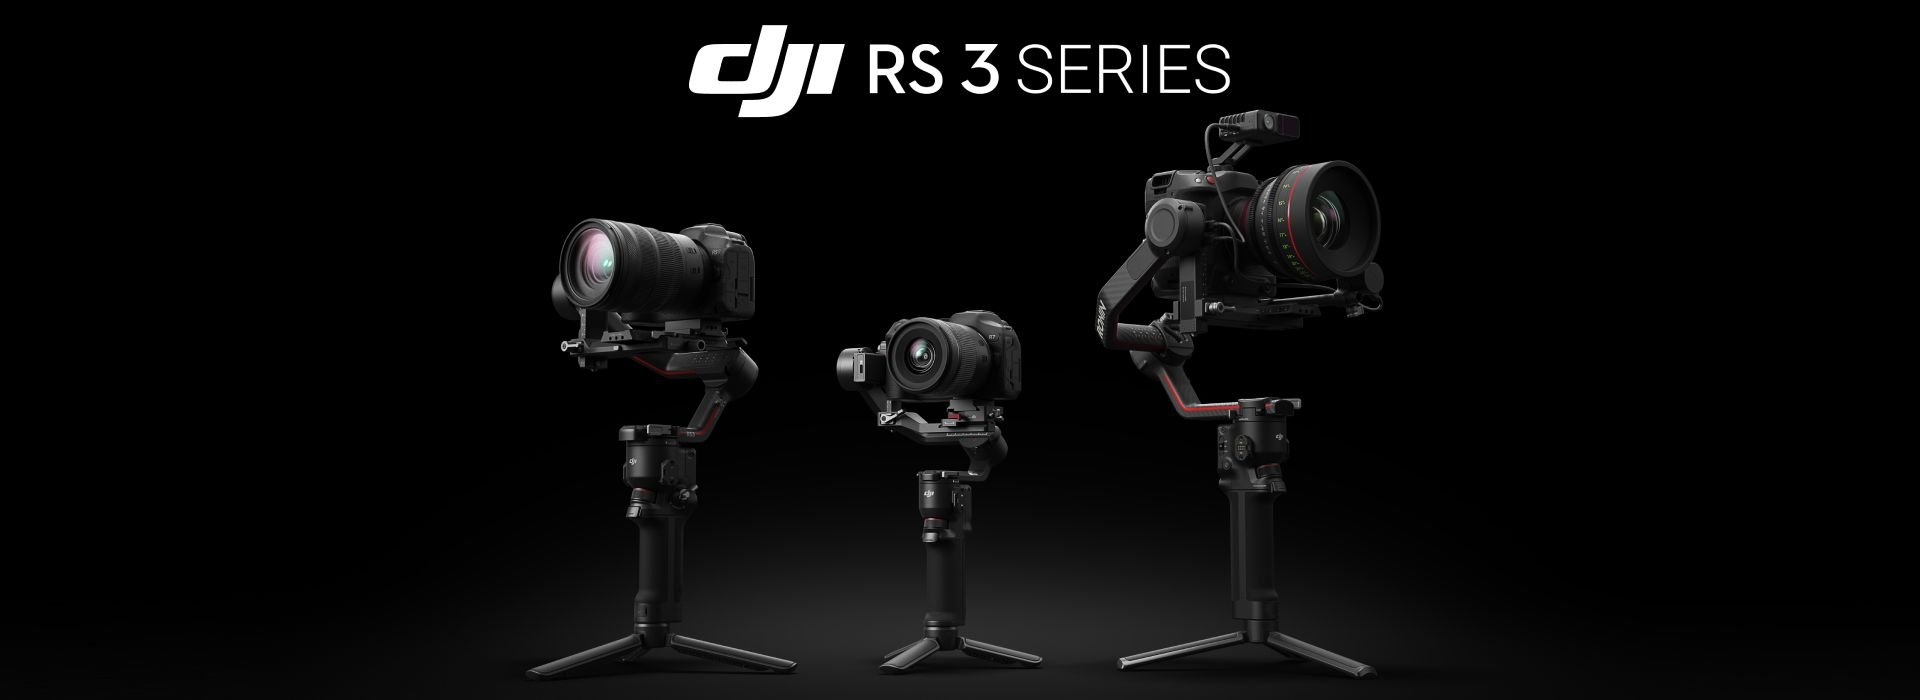 DJI RS 3 Series